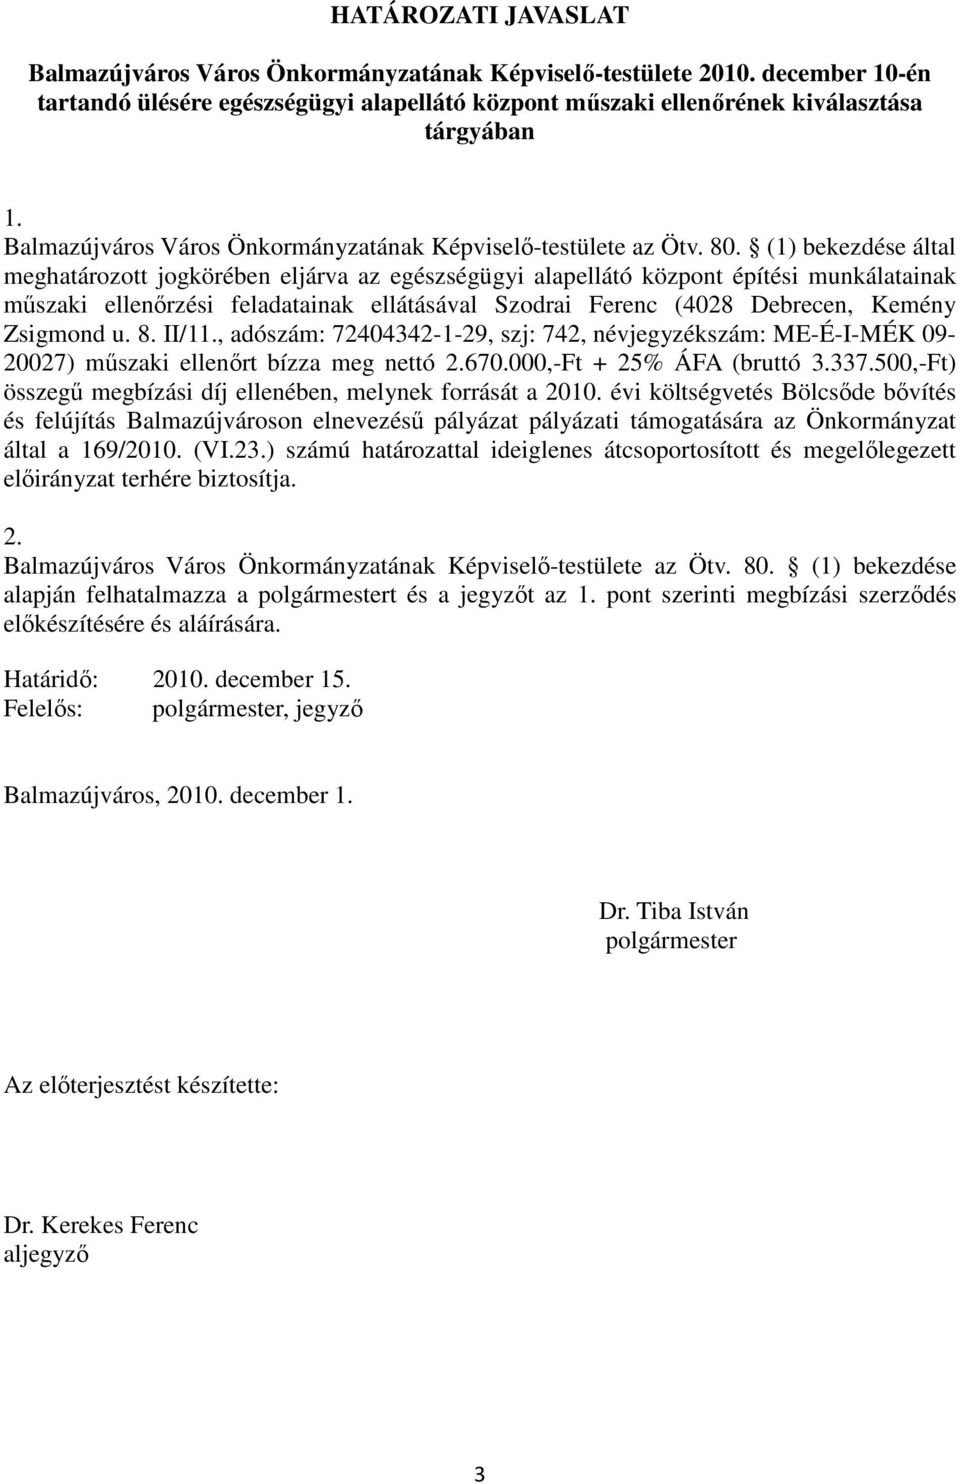 (1) bekezdése által meghatározott jogkörében eljárva az egészségügyi alapellátó központ építési munkálatainak mőszaki ellenırzési feladatainak ellátásával Szodrai Ferenc (4028 Debrecen, Kemény